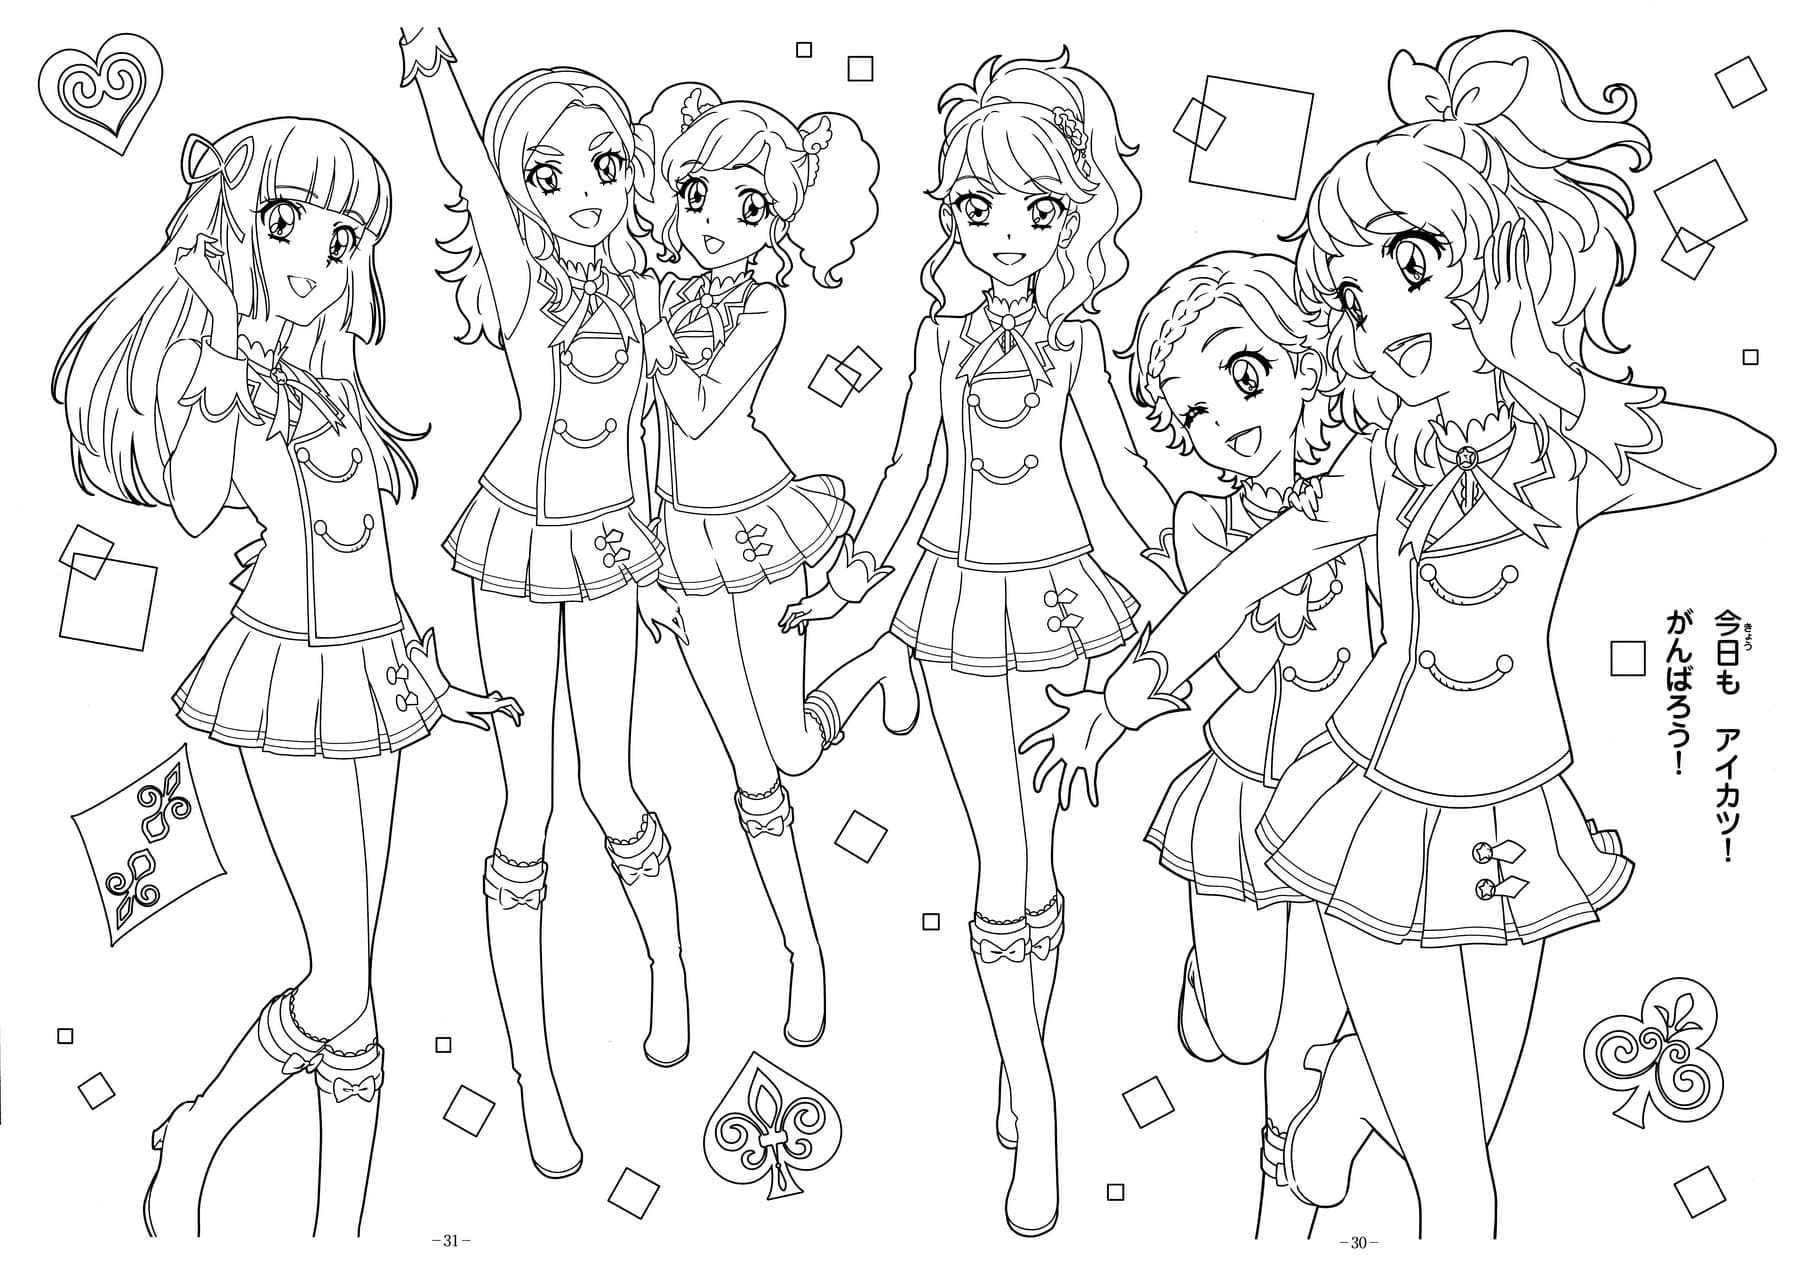 Cute Anime Girls from Aikatsu